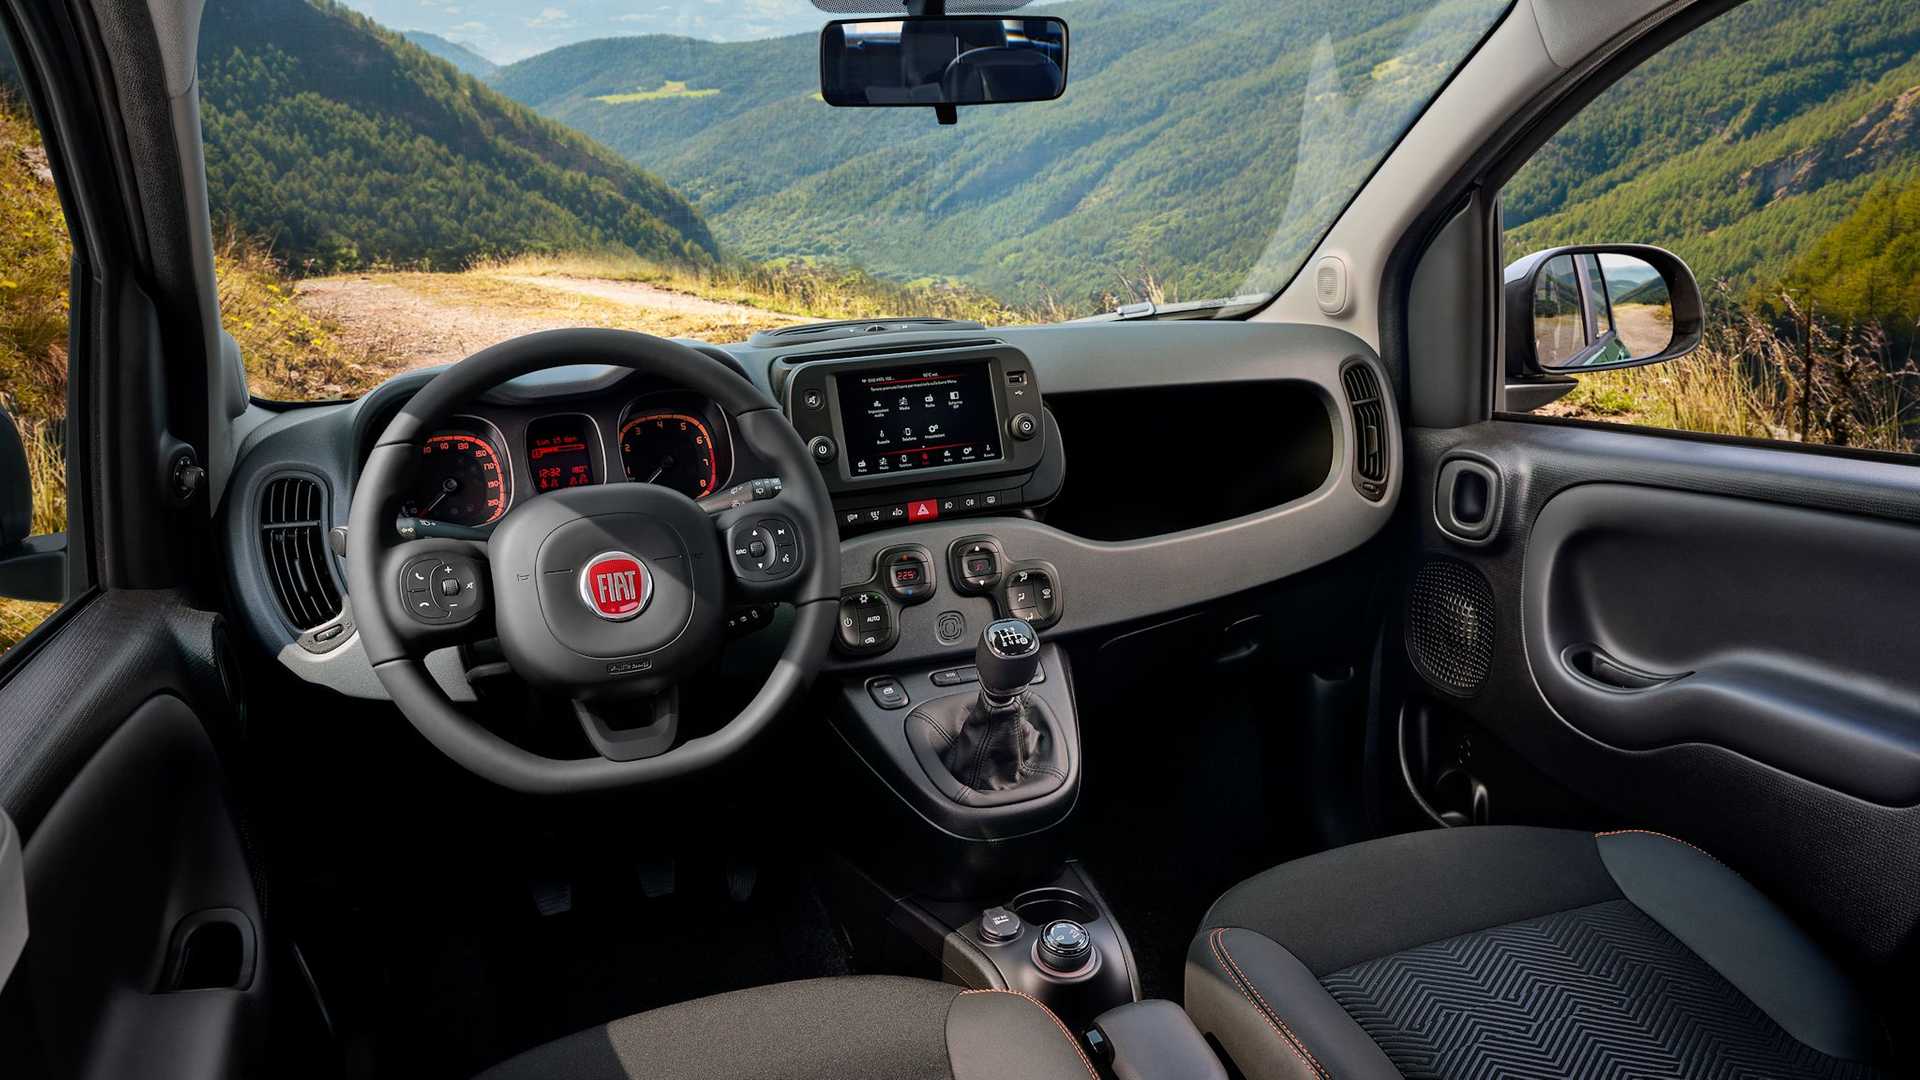 Fiat Panda i Tipo otrzymują wersje Garmin - w zestawie smartwatch